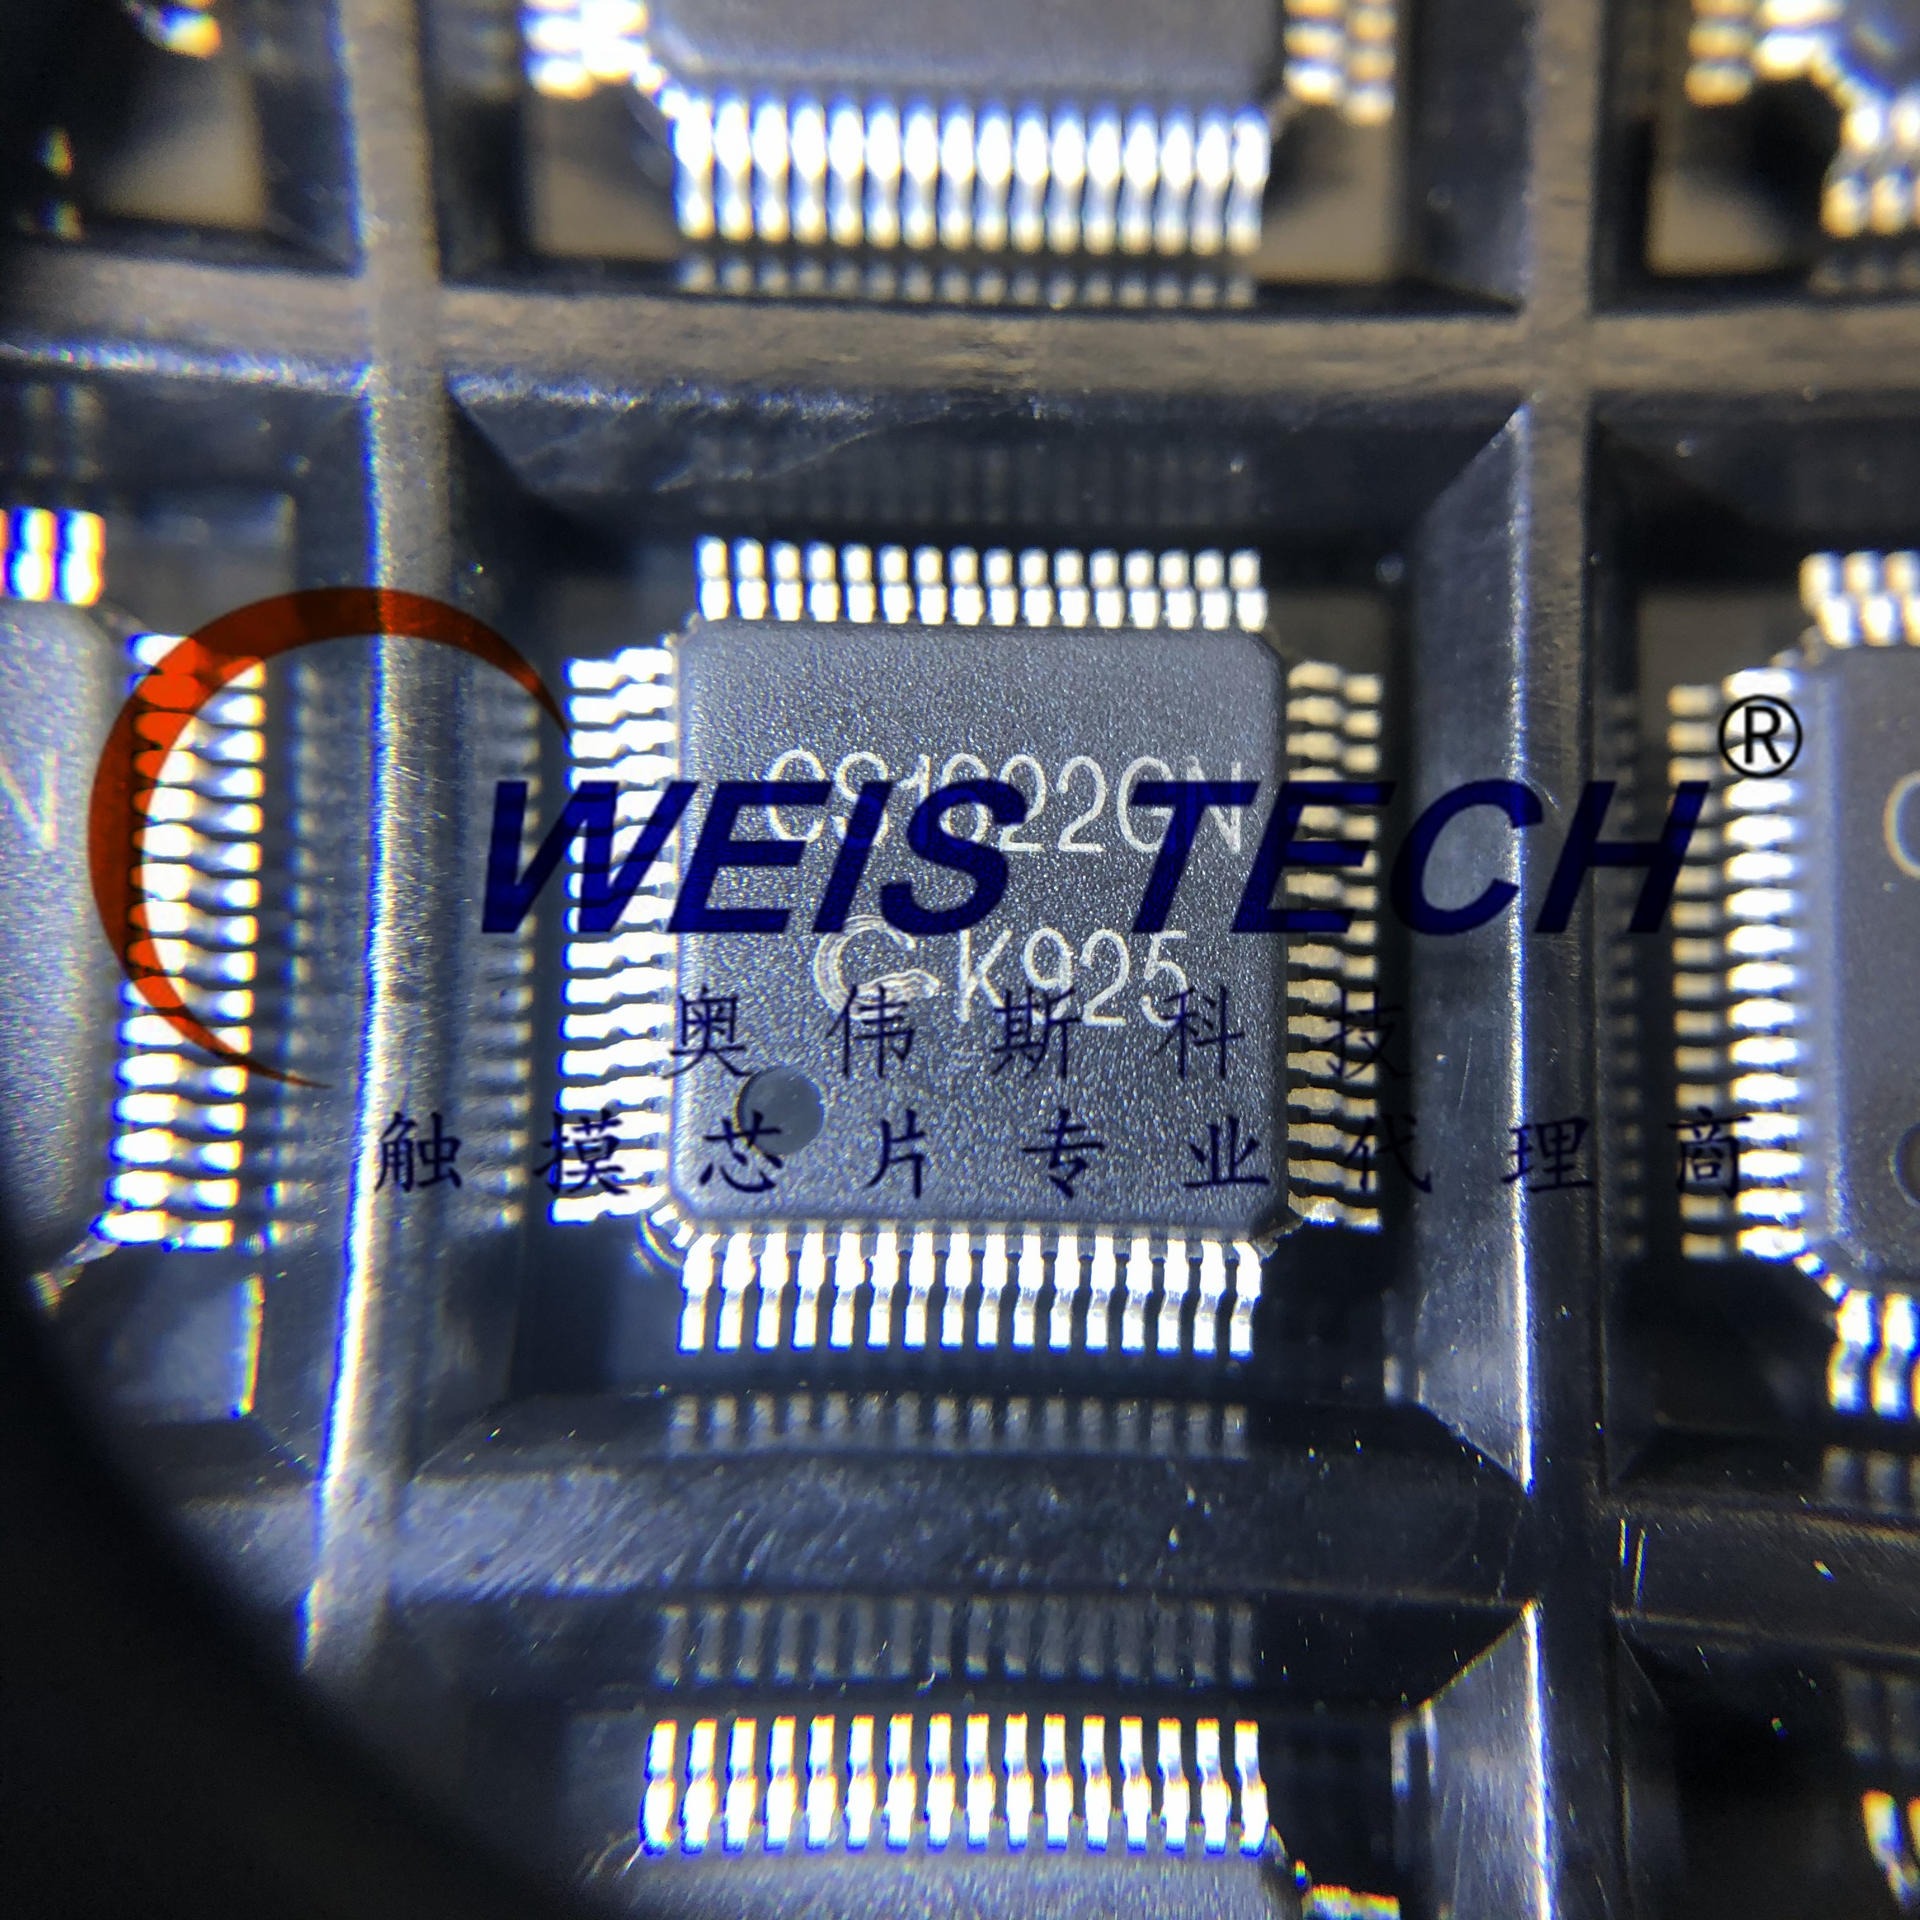 CS1622GN   电源管理芯片  触摸芯片 单片机  放算IC专业代理商芯片  配单 经销与代理